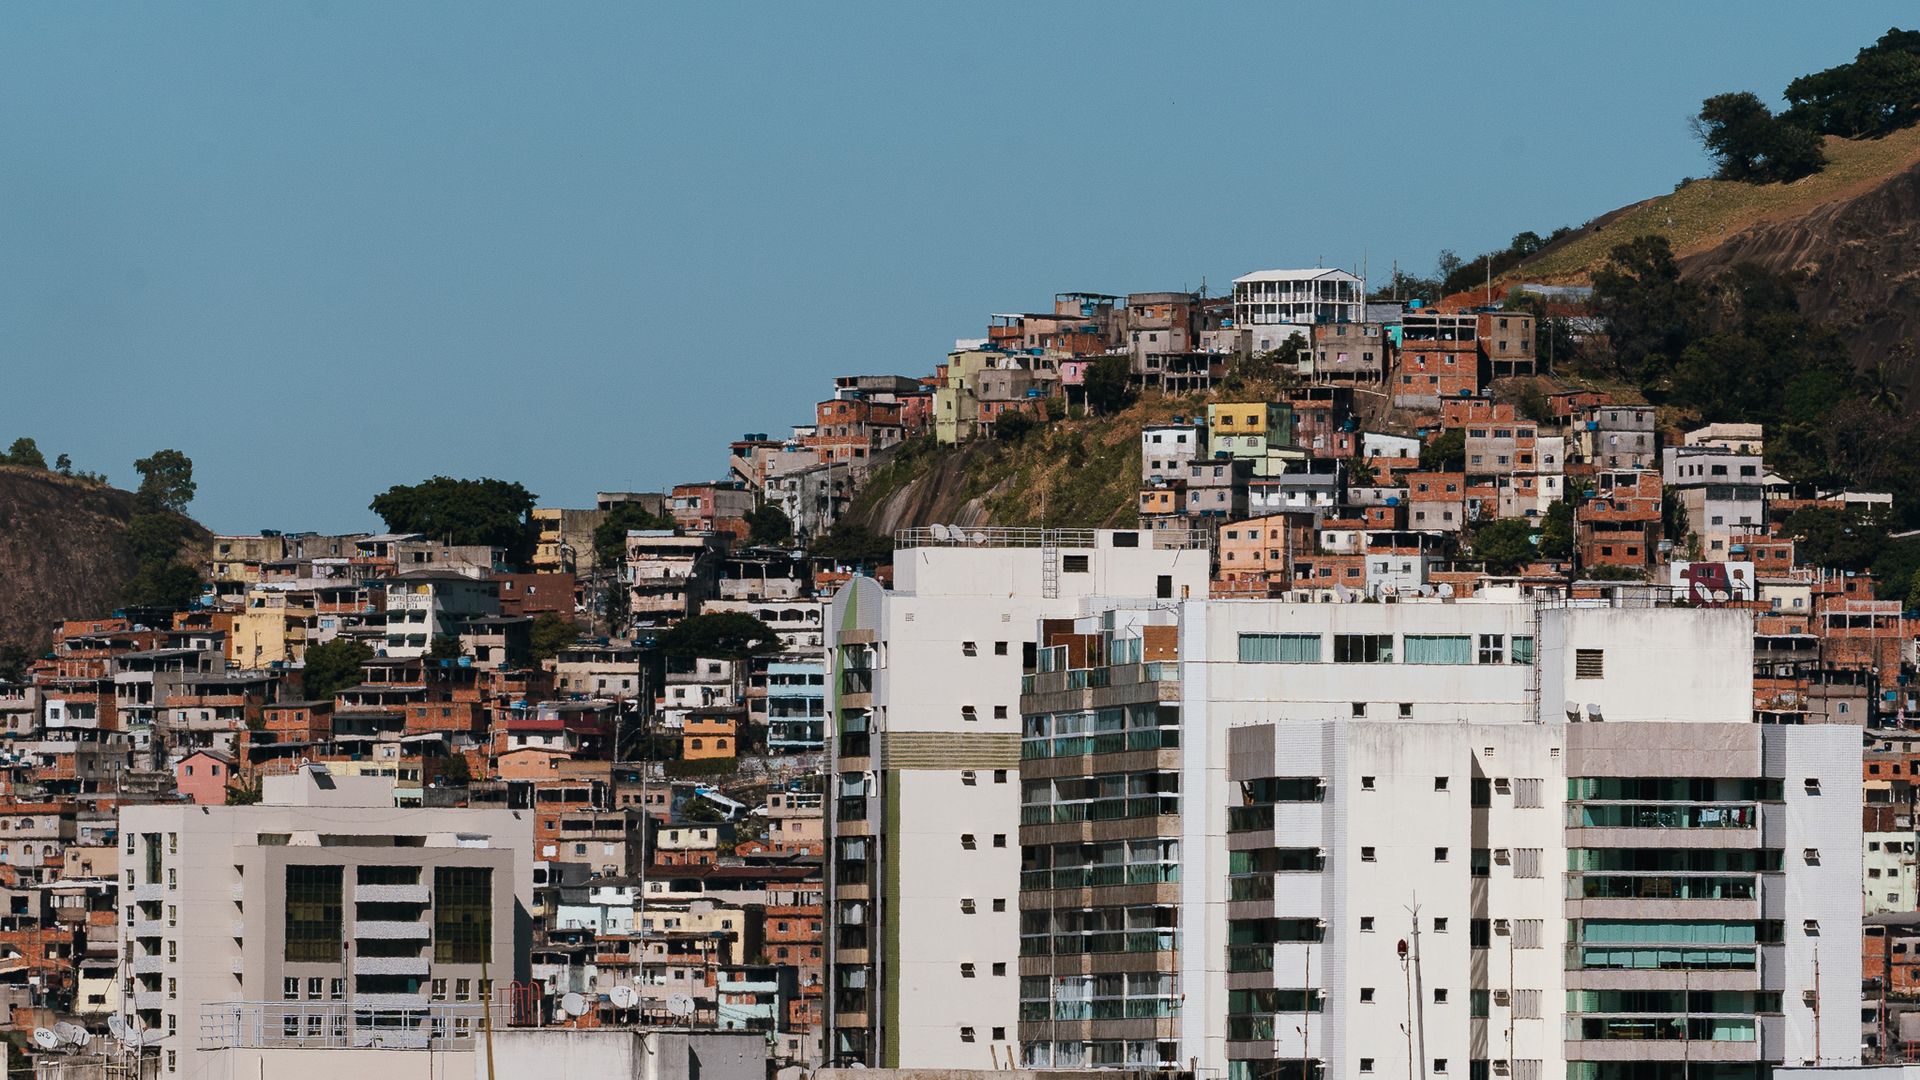 Ensaio fotográfico retrata as diferentes fromas de habitação na cidade de Vitória